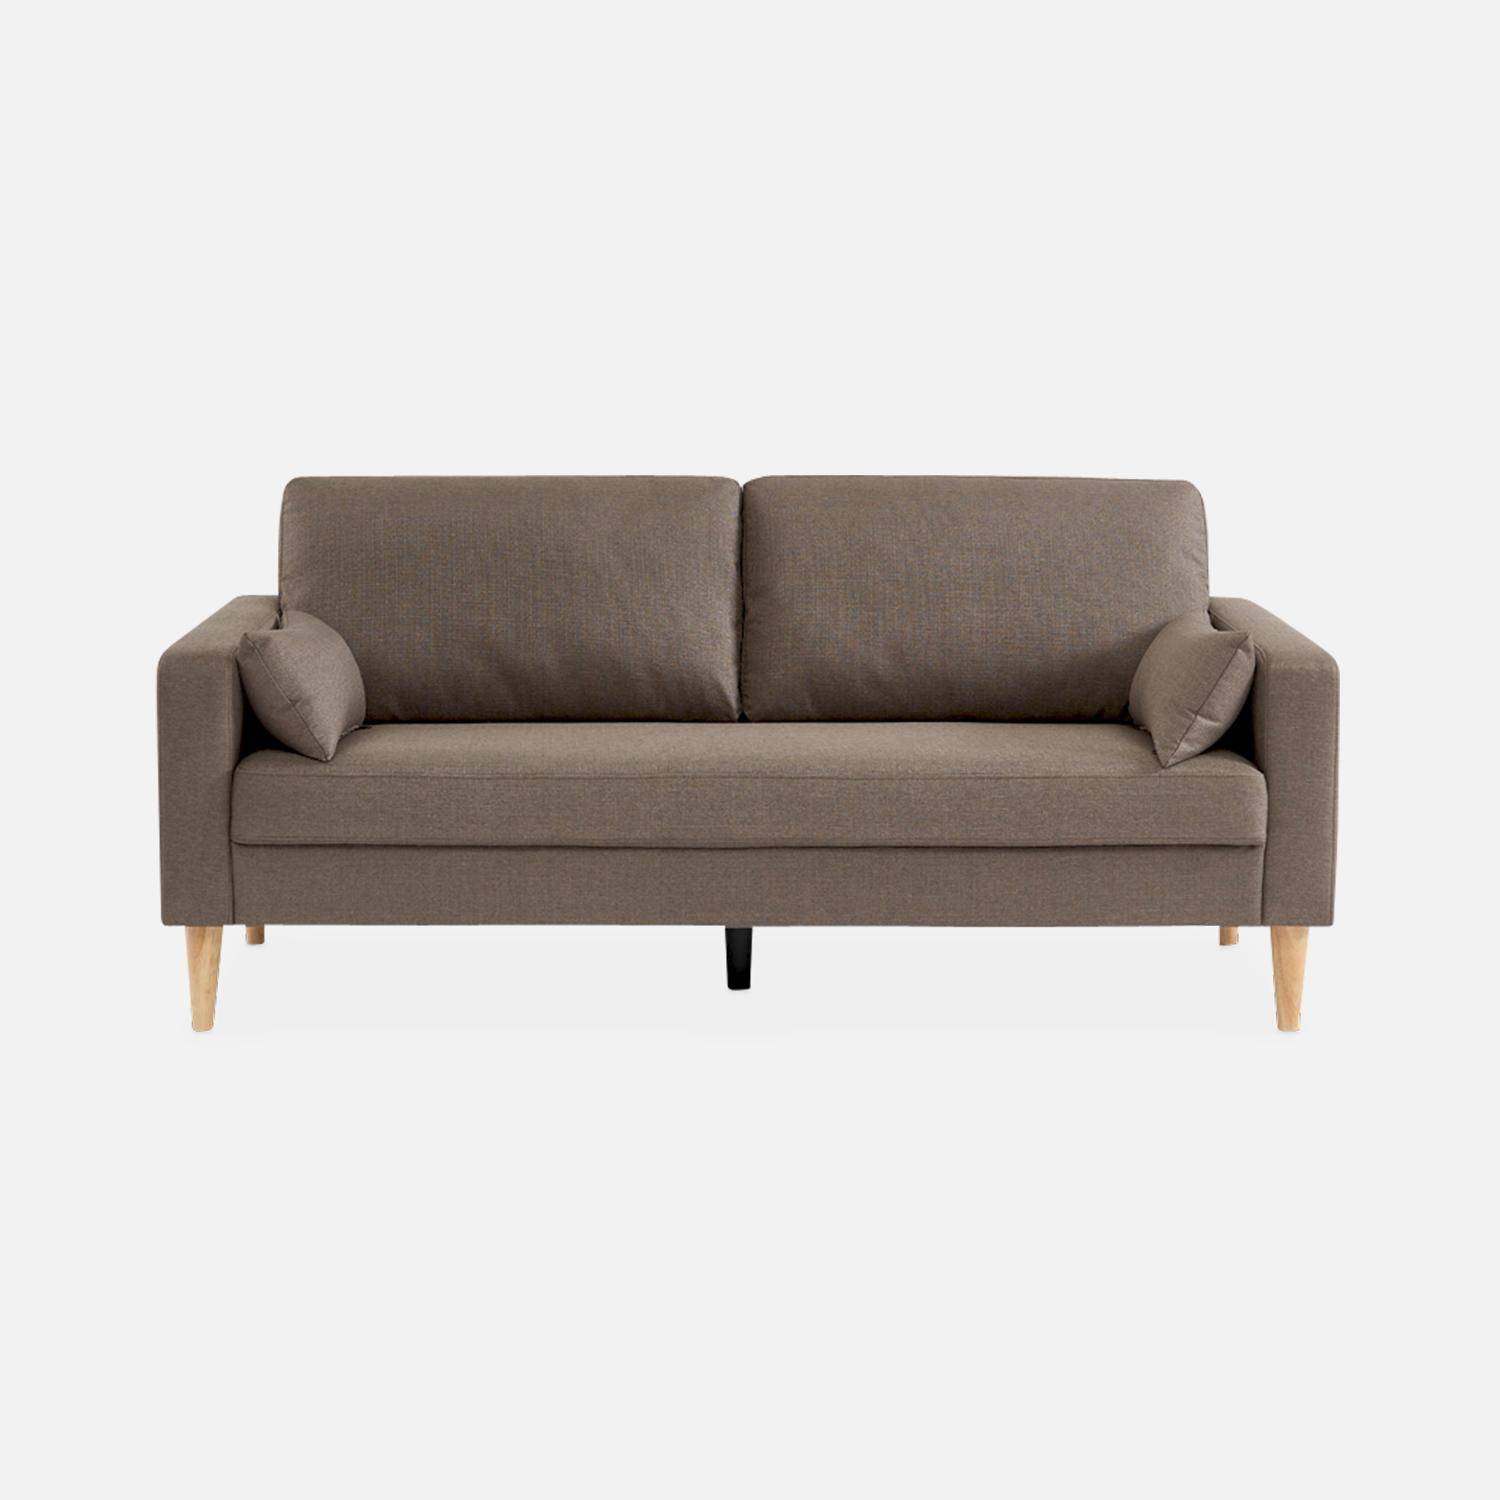 Donkergrijze stoffen driezits sofa - Bjorn - 3-zits bank met houten poten, scandinavische stijl   Photo3